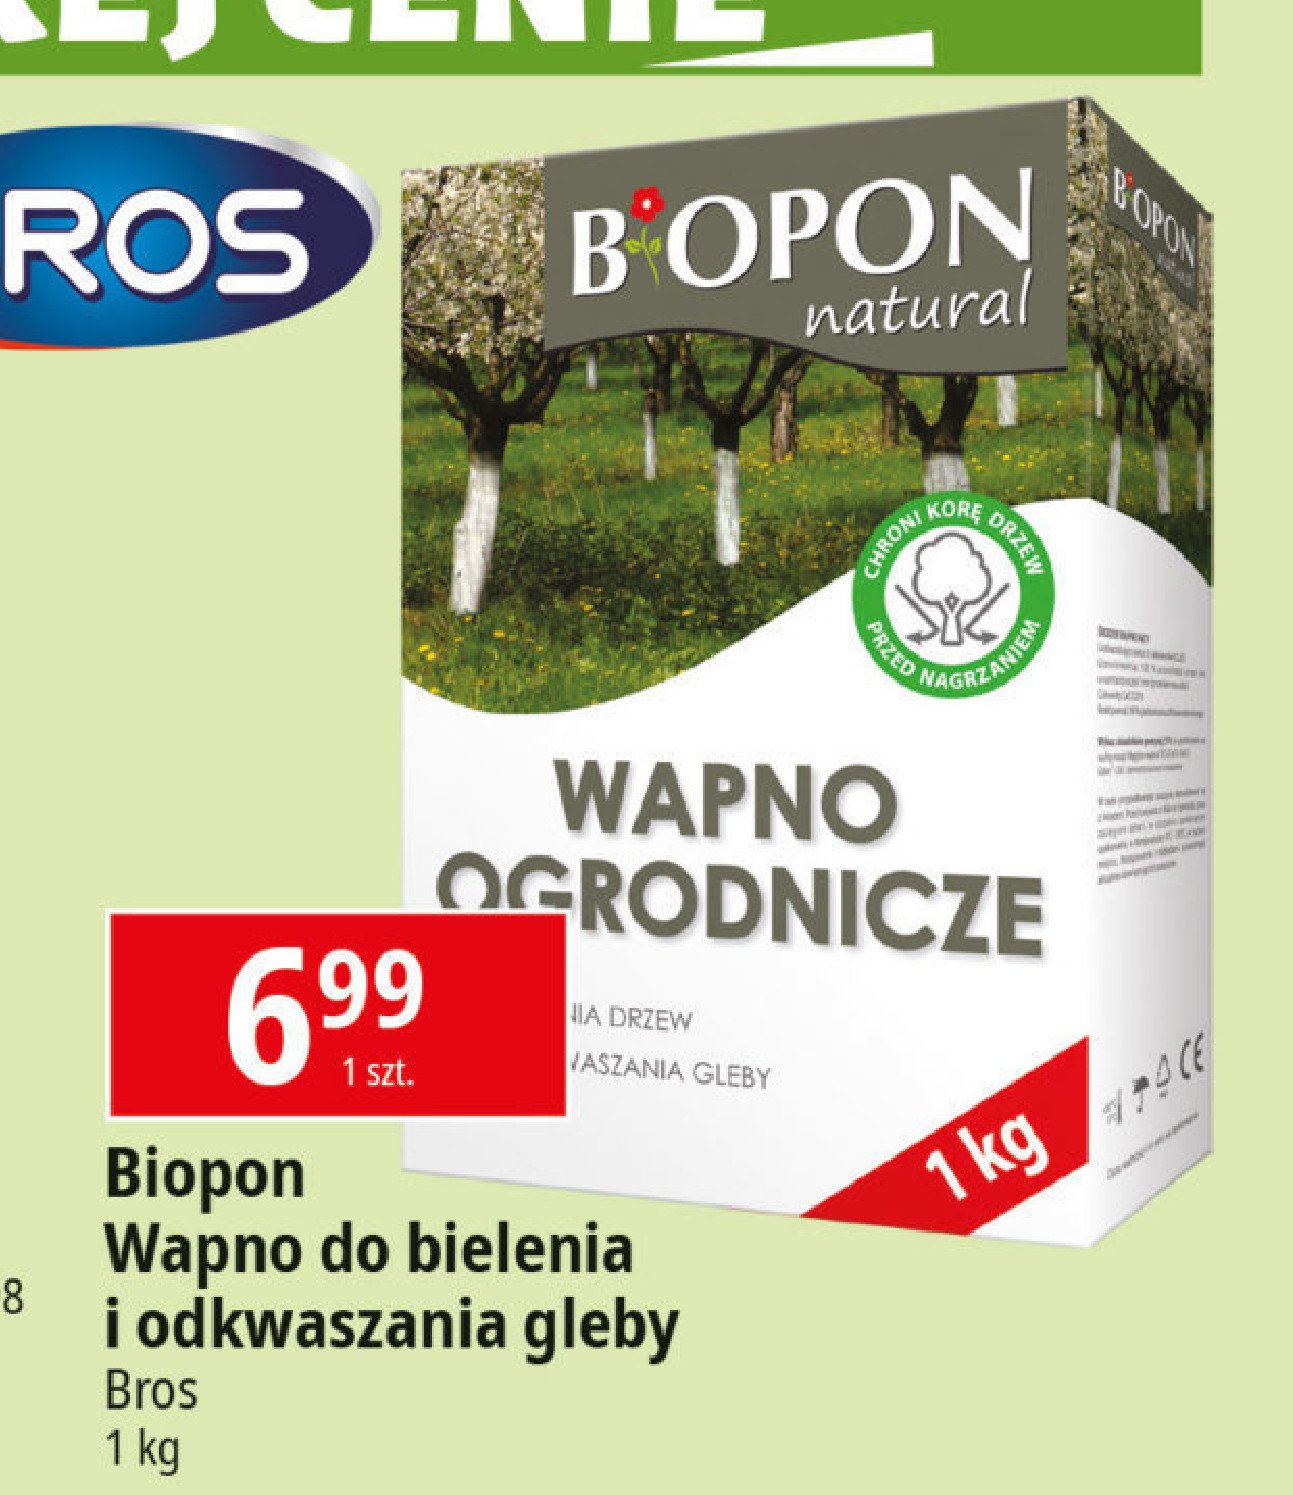 Wapno ogrodnicze Biopon natural promocja